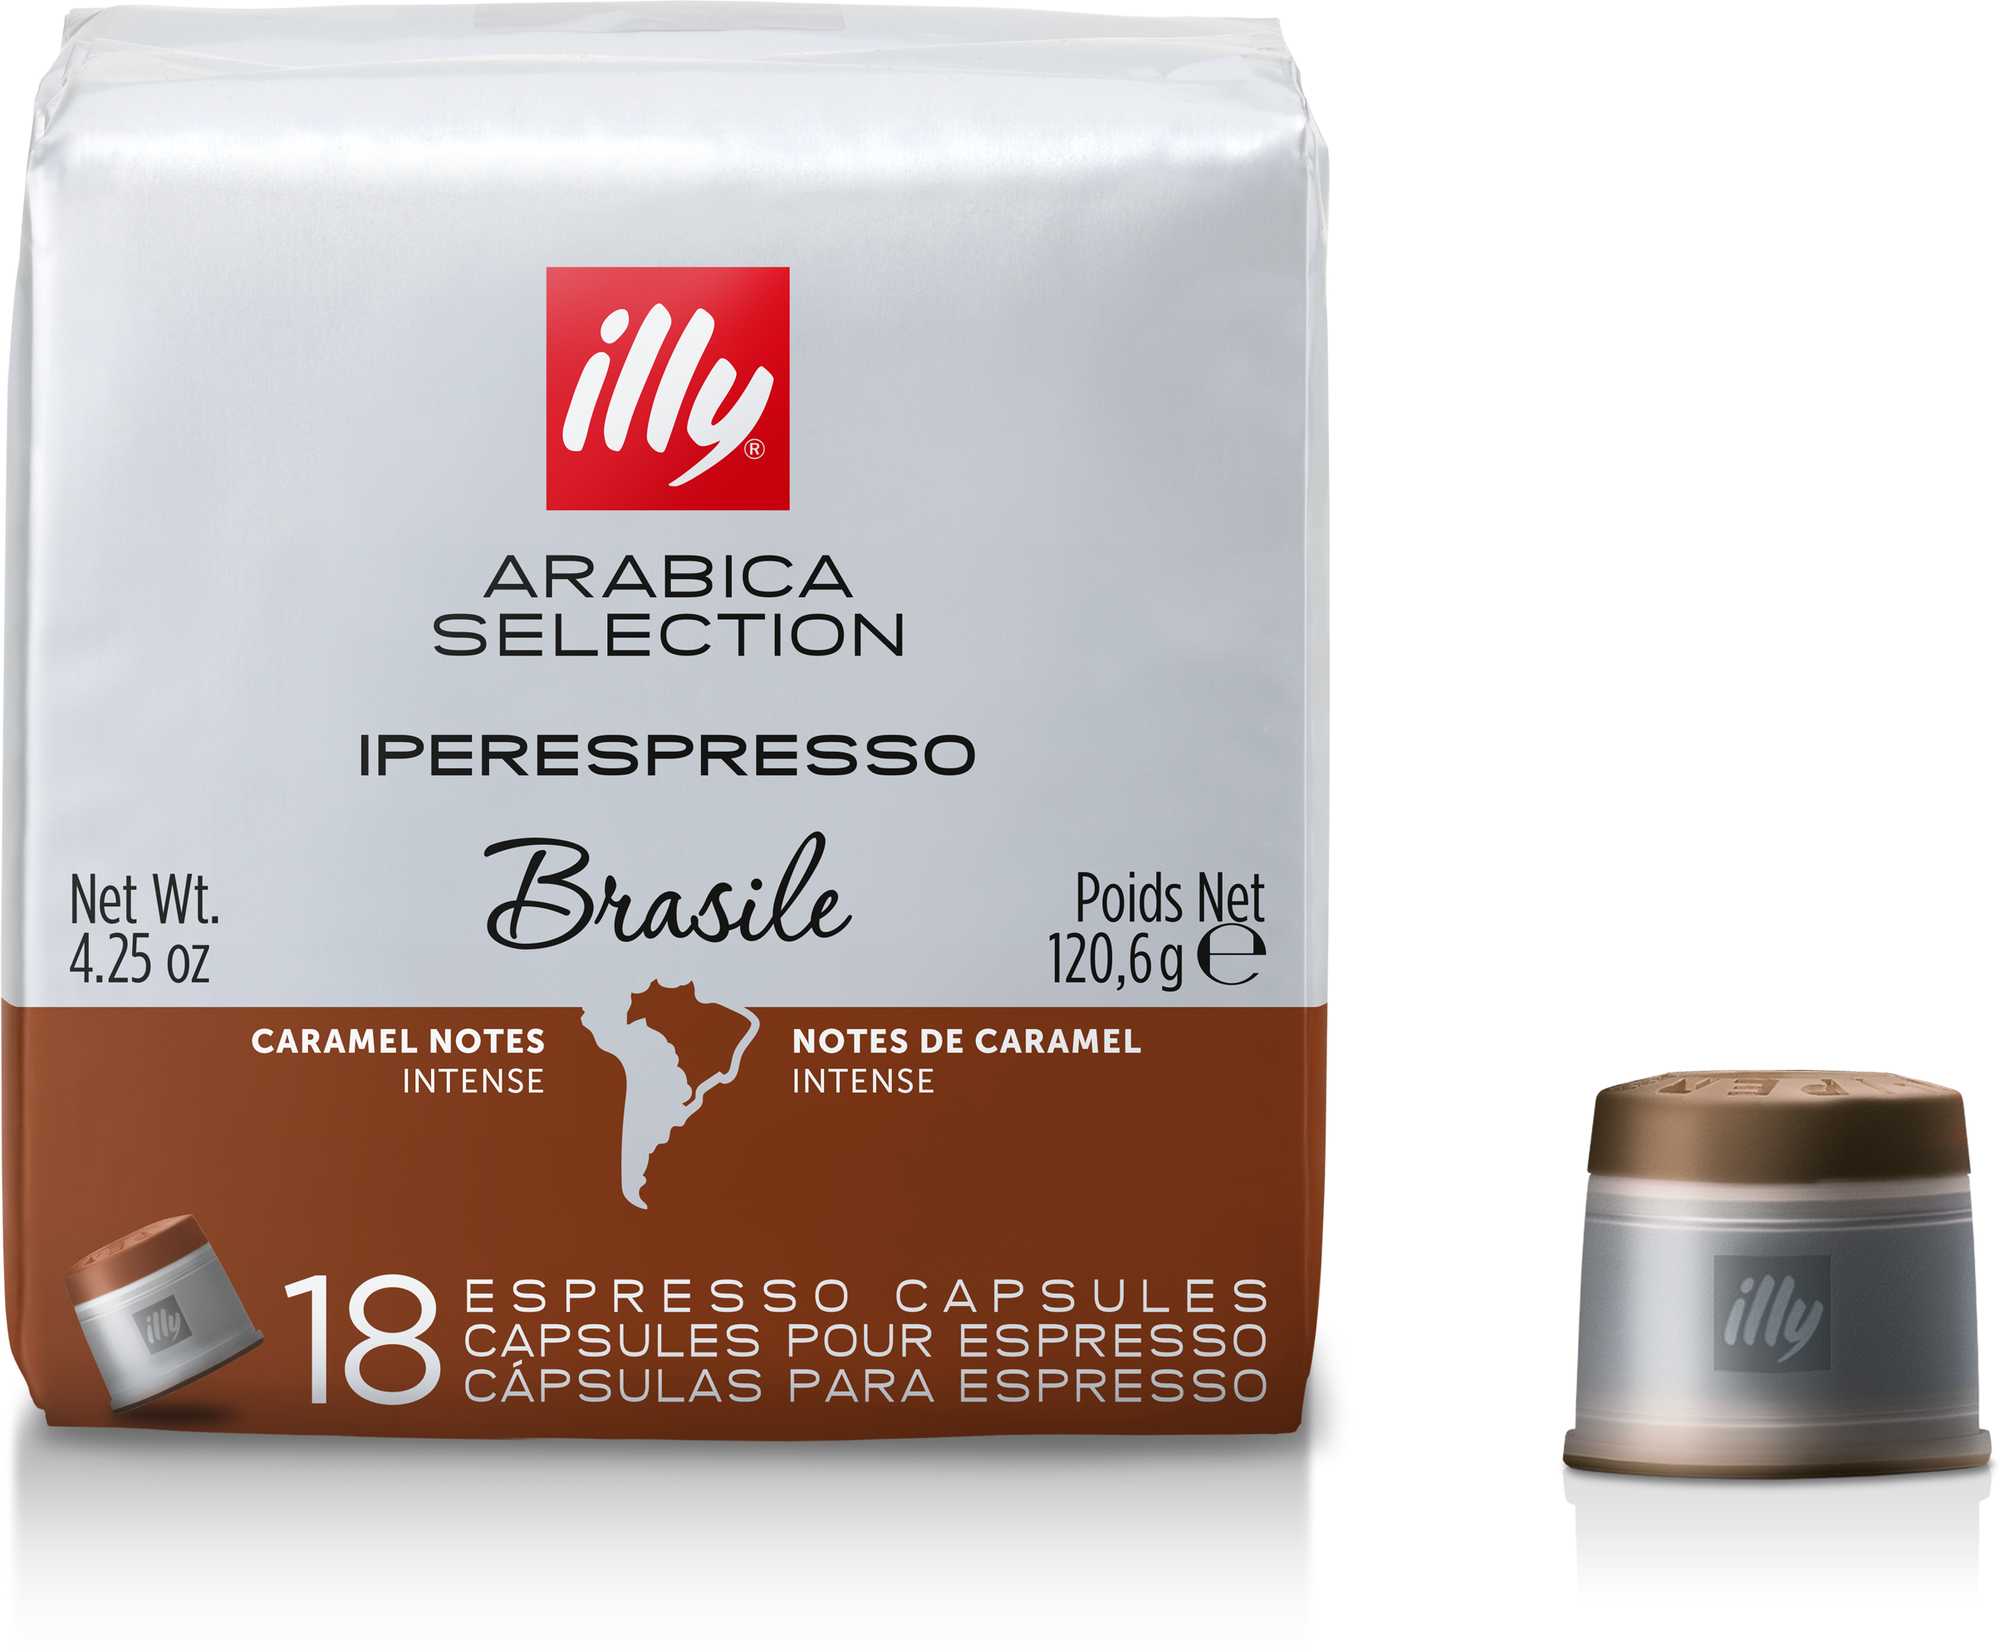 Кофе illy в капсулах iperespresso, Арабика Селекшн, Бразилия, 18 капс